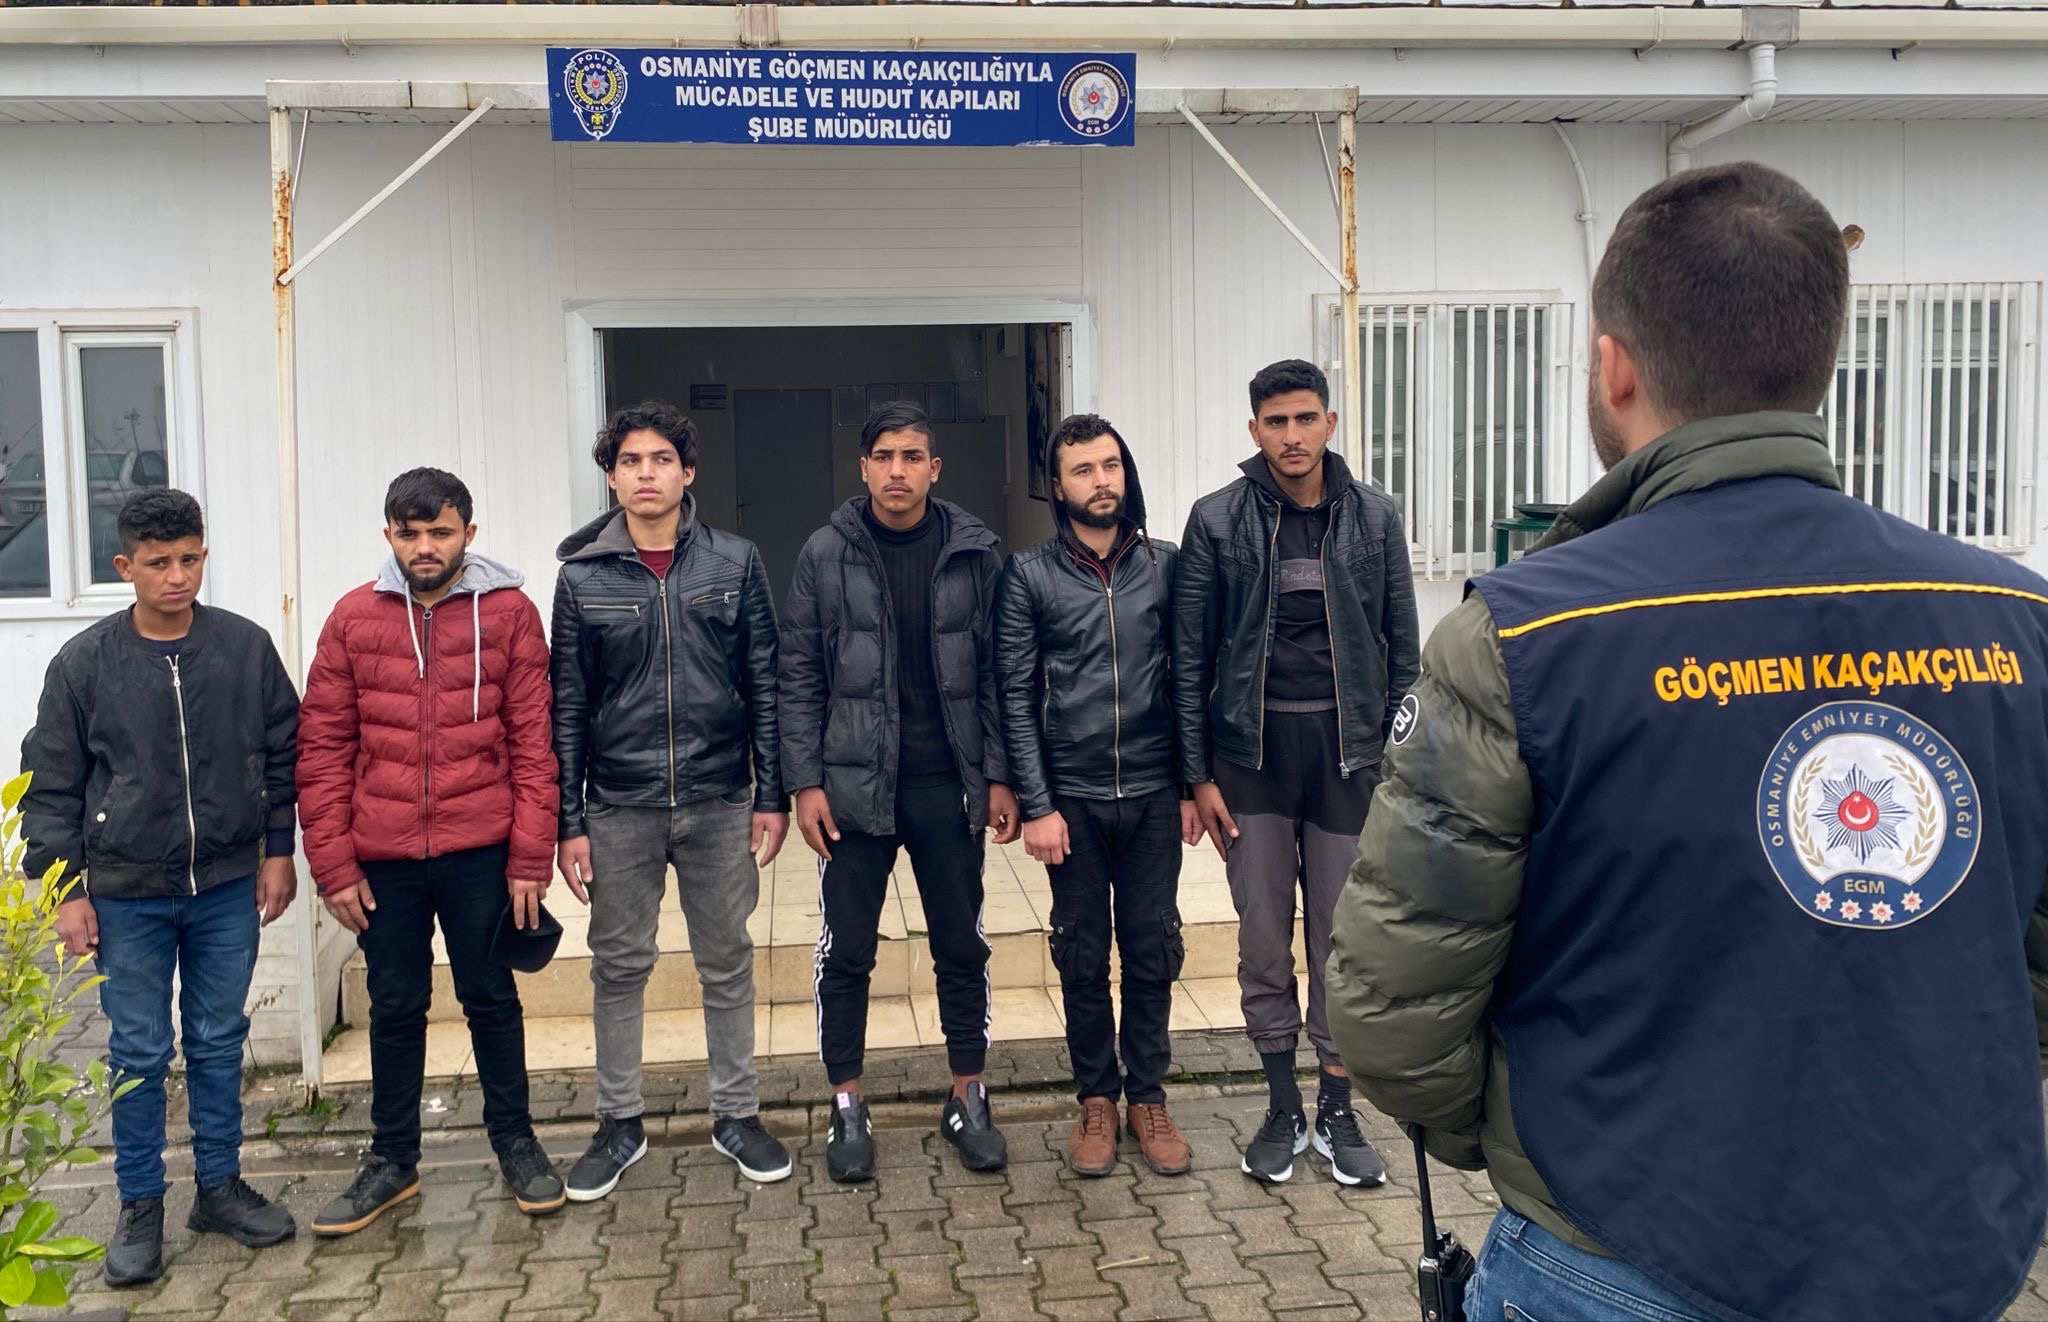 Osmaniye ilinde, 6 kaçak göçmenin yakalandığı bildirildi.